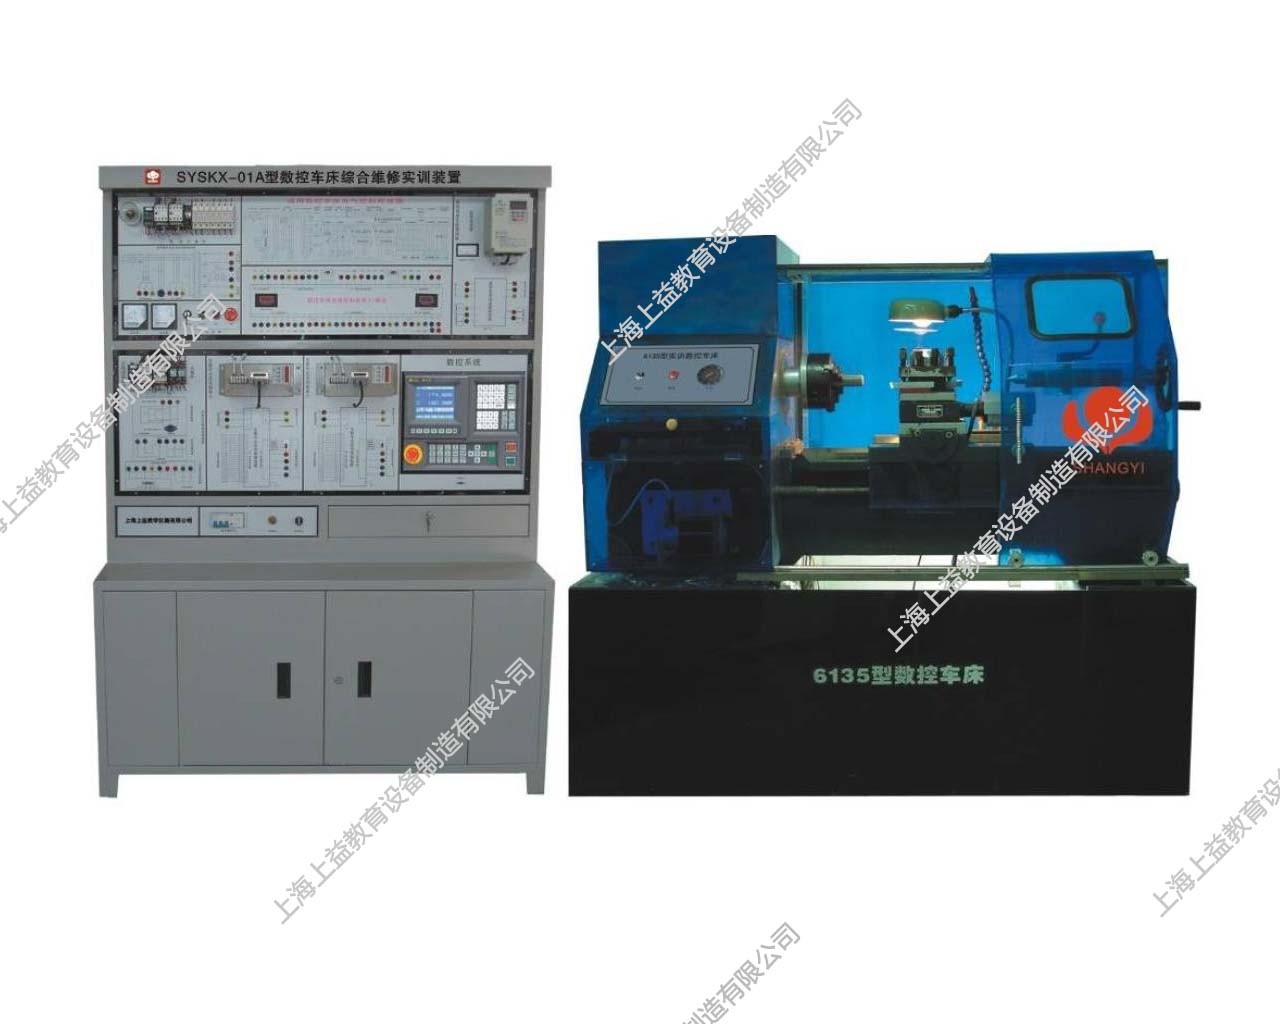 SYSKX-01A数控车床综合维修实训装置（国产系统）